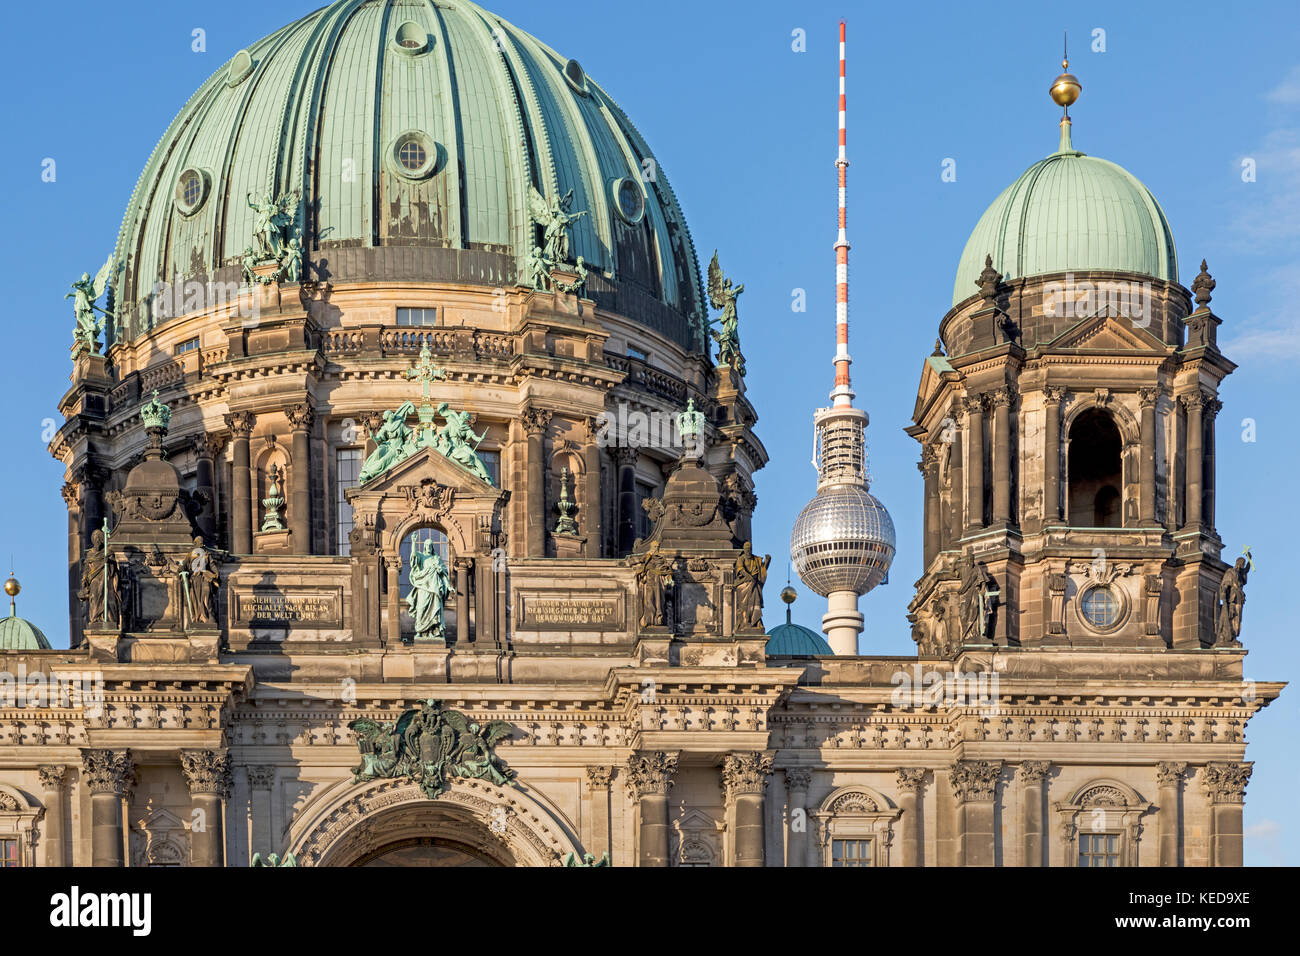 Cathédrale de Berlin avec tour de télévision alex, Berlin, Germany, Europe Banque D'Images